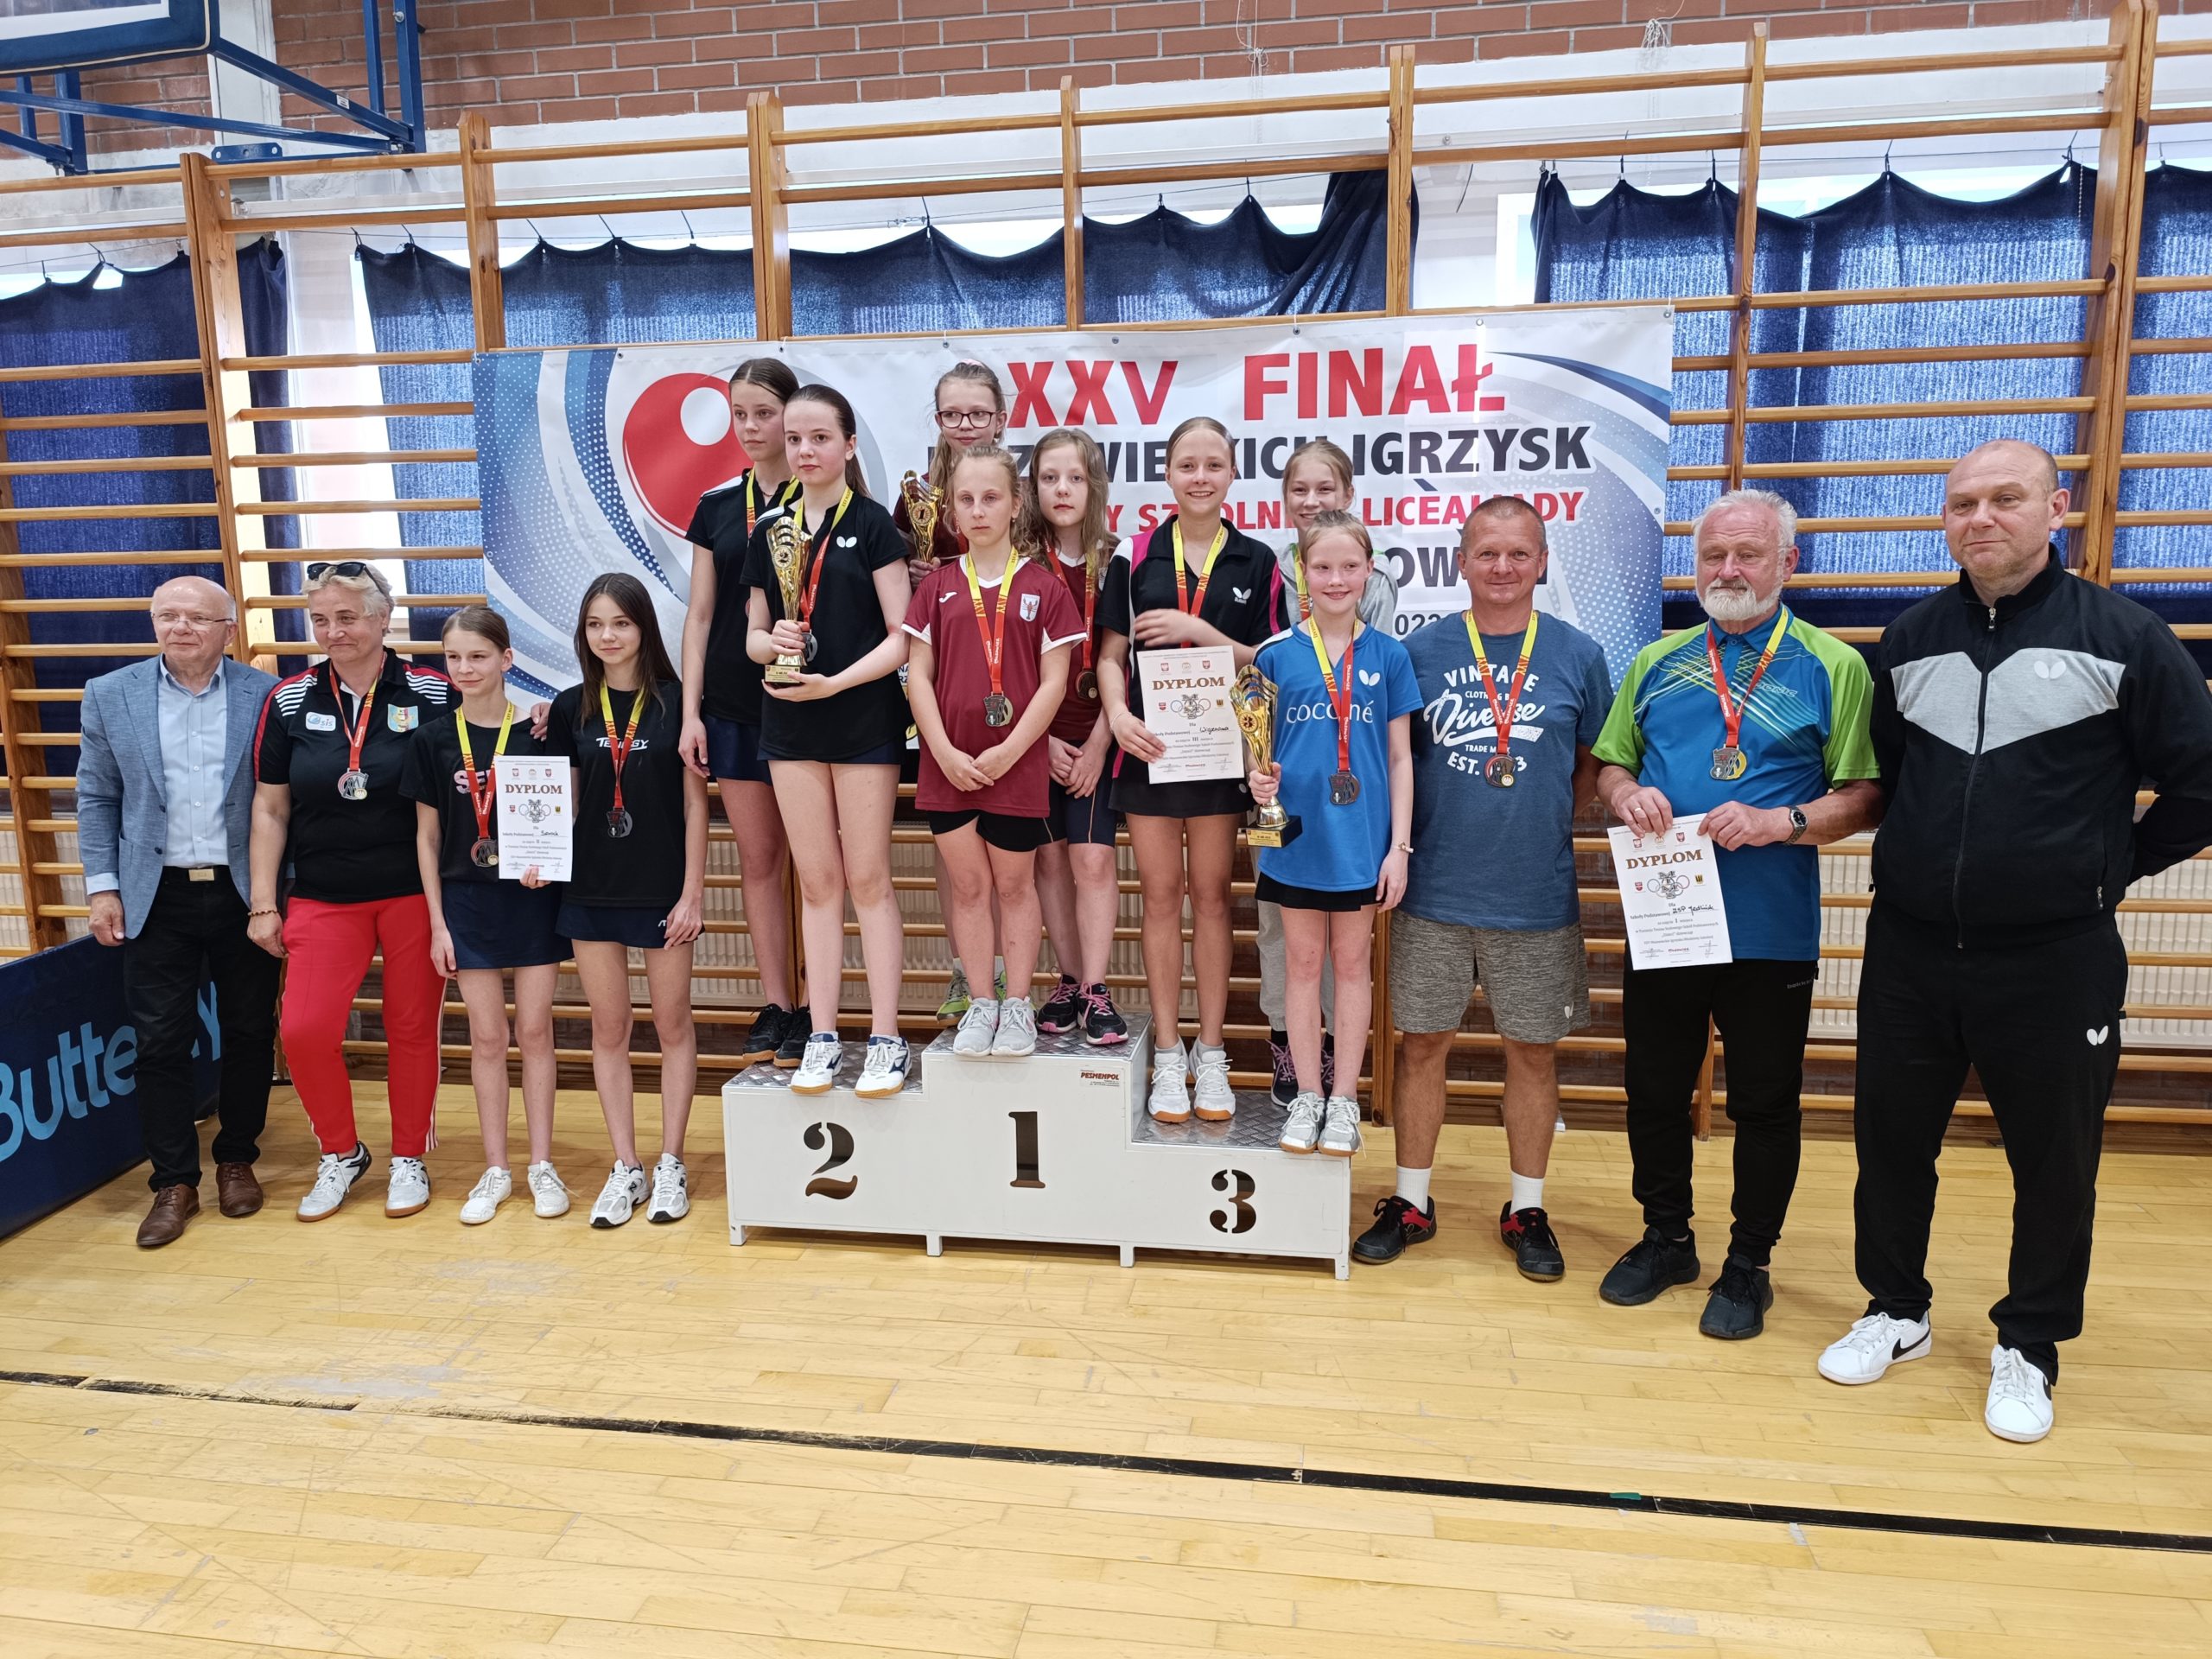 Najlepsze drużyny na Mazowszu w tenisie stołowym dziewcząt drużyny szkolne stoją na podium dla zwycięzców. W tle drabinki gimnastyczne.